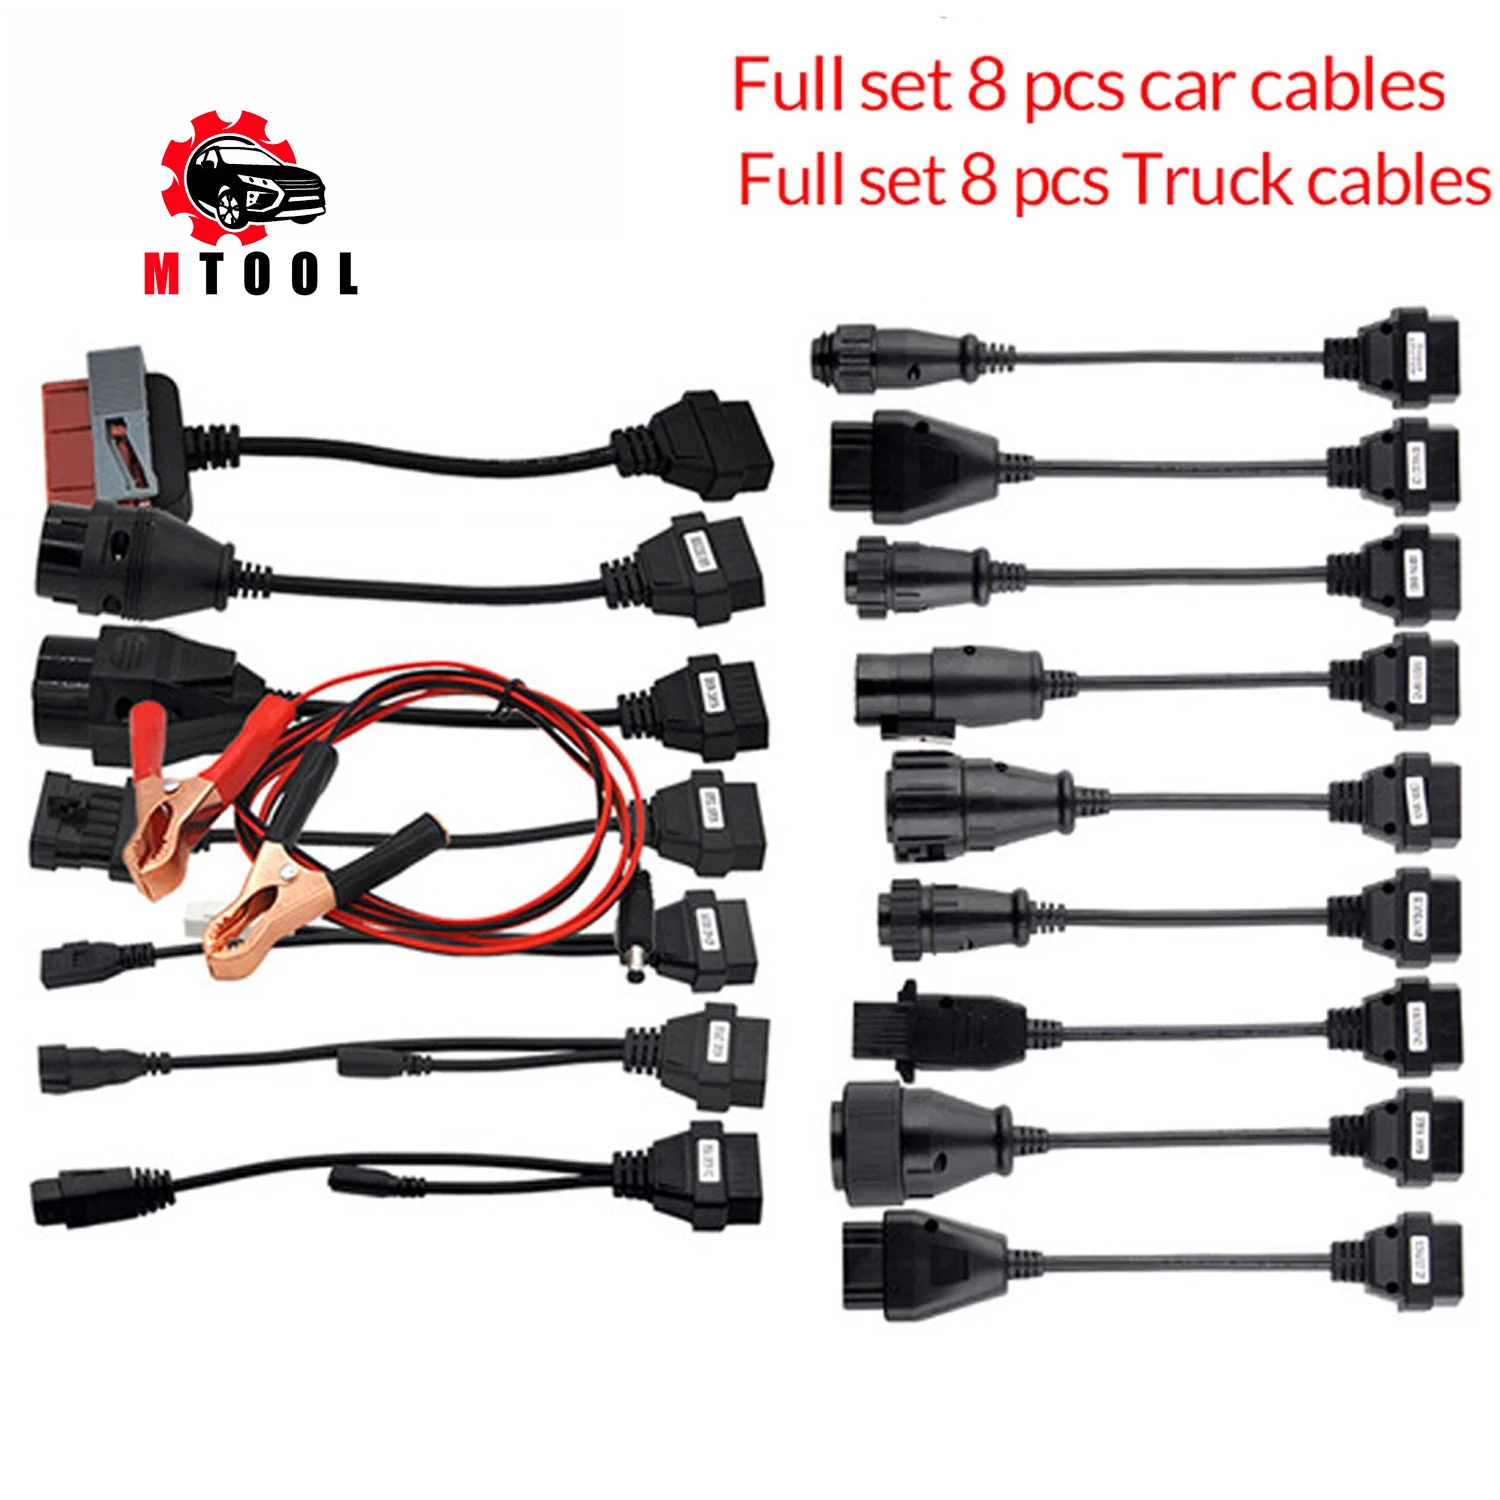 

8pcs Truck Cables Car Cables Full Set for CDP TCS Multidiag pro+ Auto Diagnostic tool OBD2 Car connector OBDII 16pin